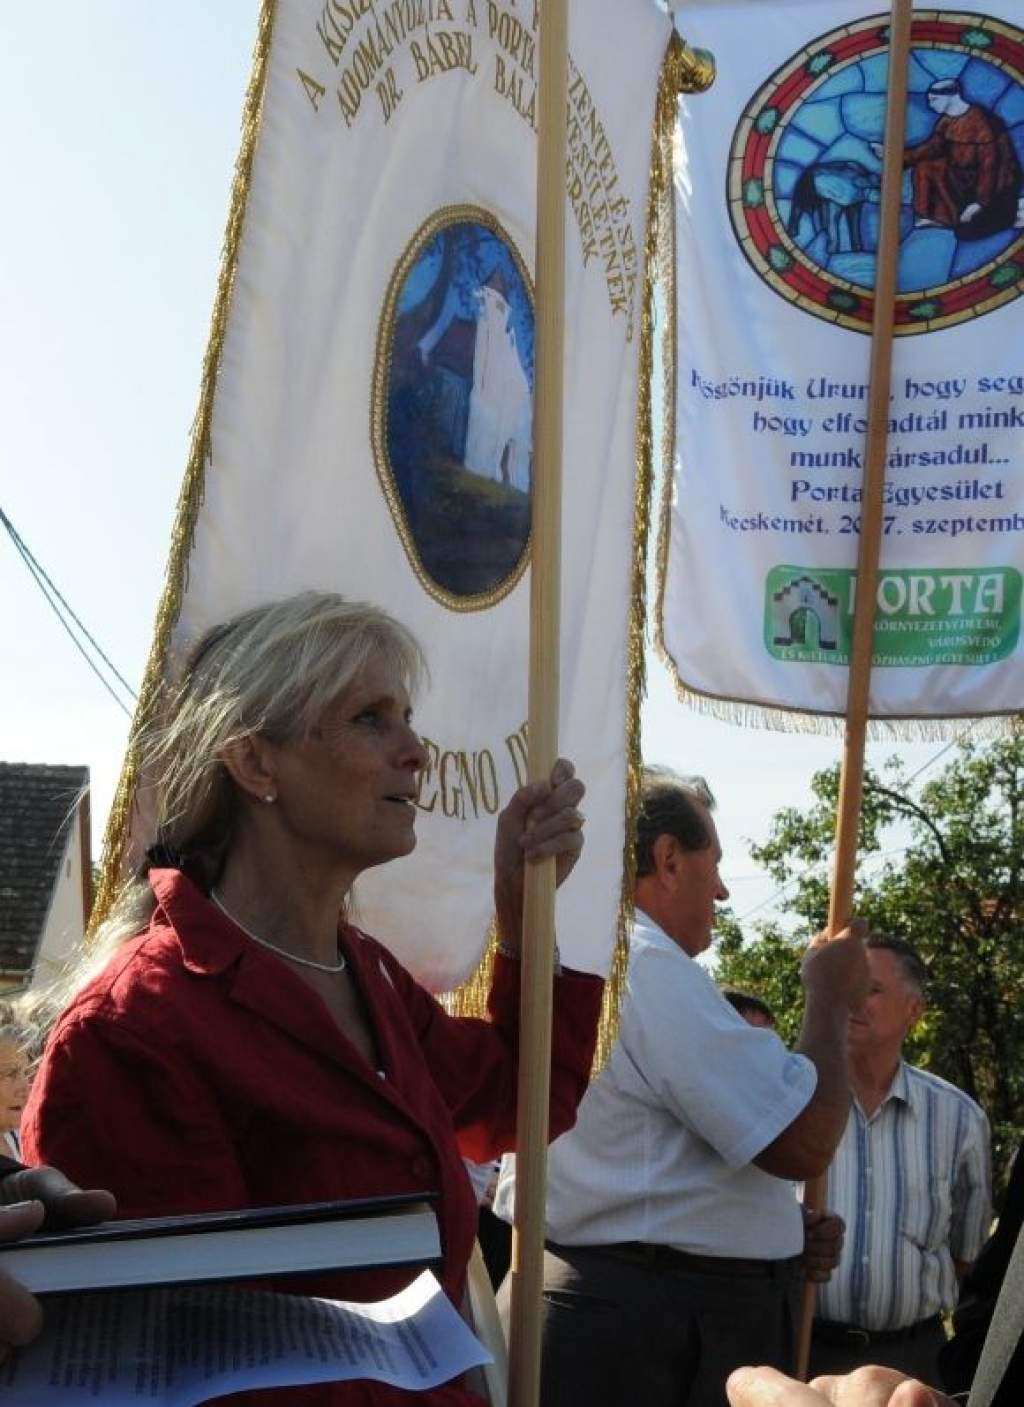 Nemzetőr zászlót ajándékoz a Porta Egyesület a vasárnapi szentmisén